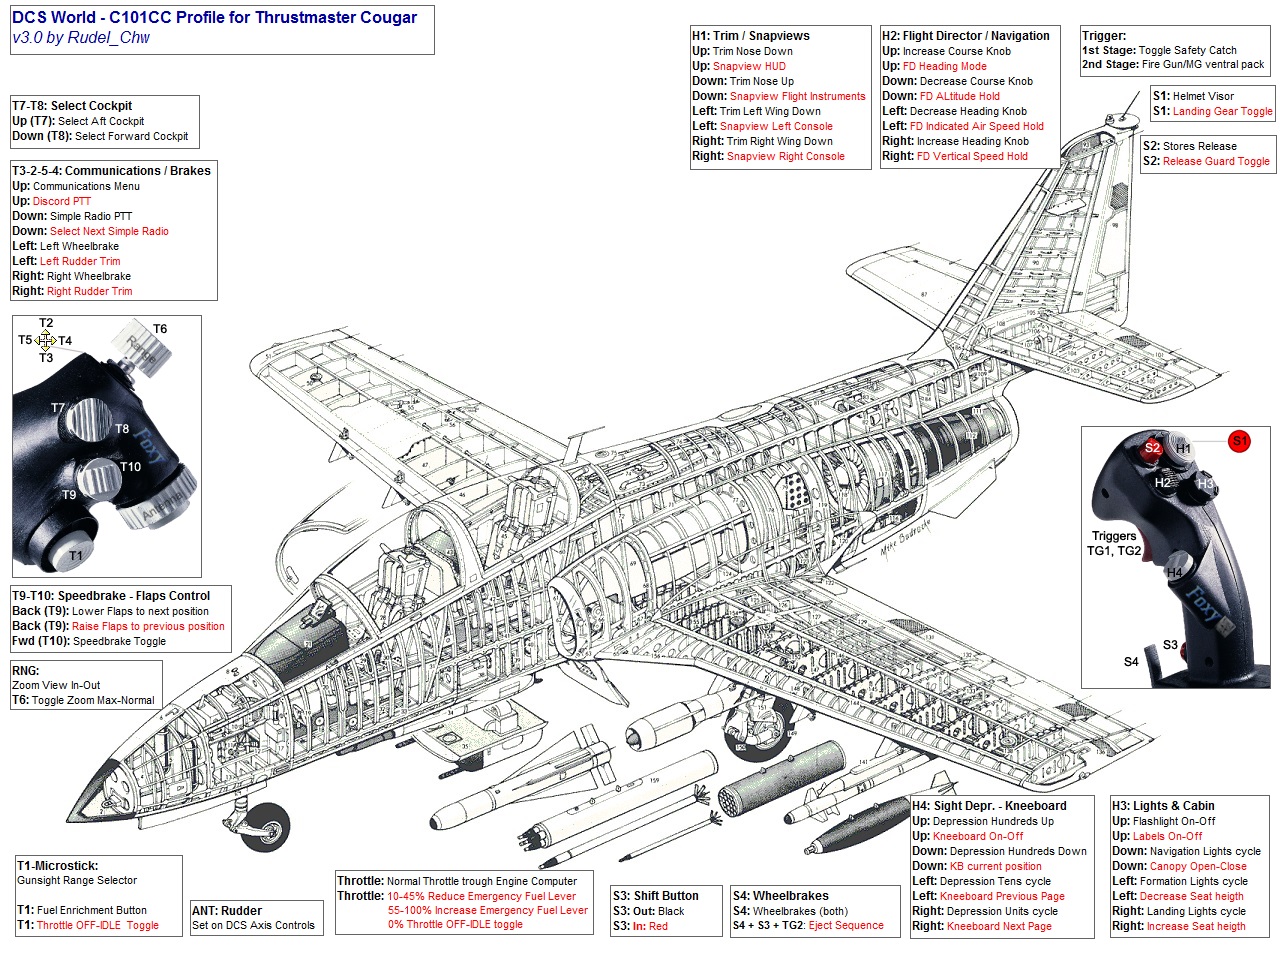 TM Hotas Cougar profile for DCS C-101CC